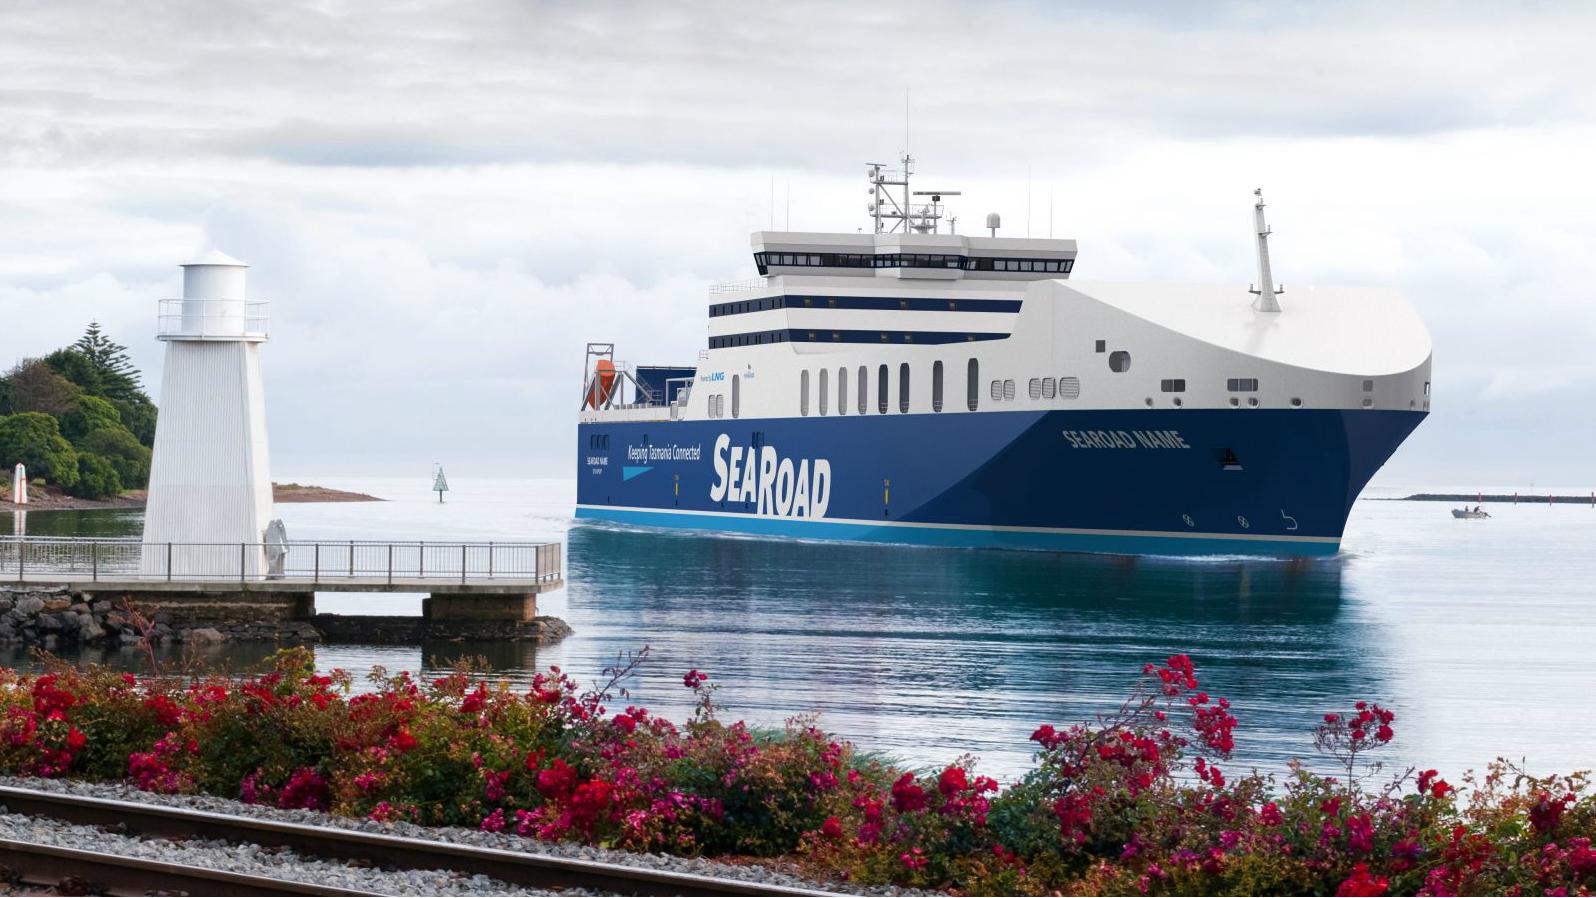 SeaRoad LNG RoRo ferry